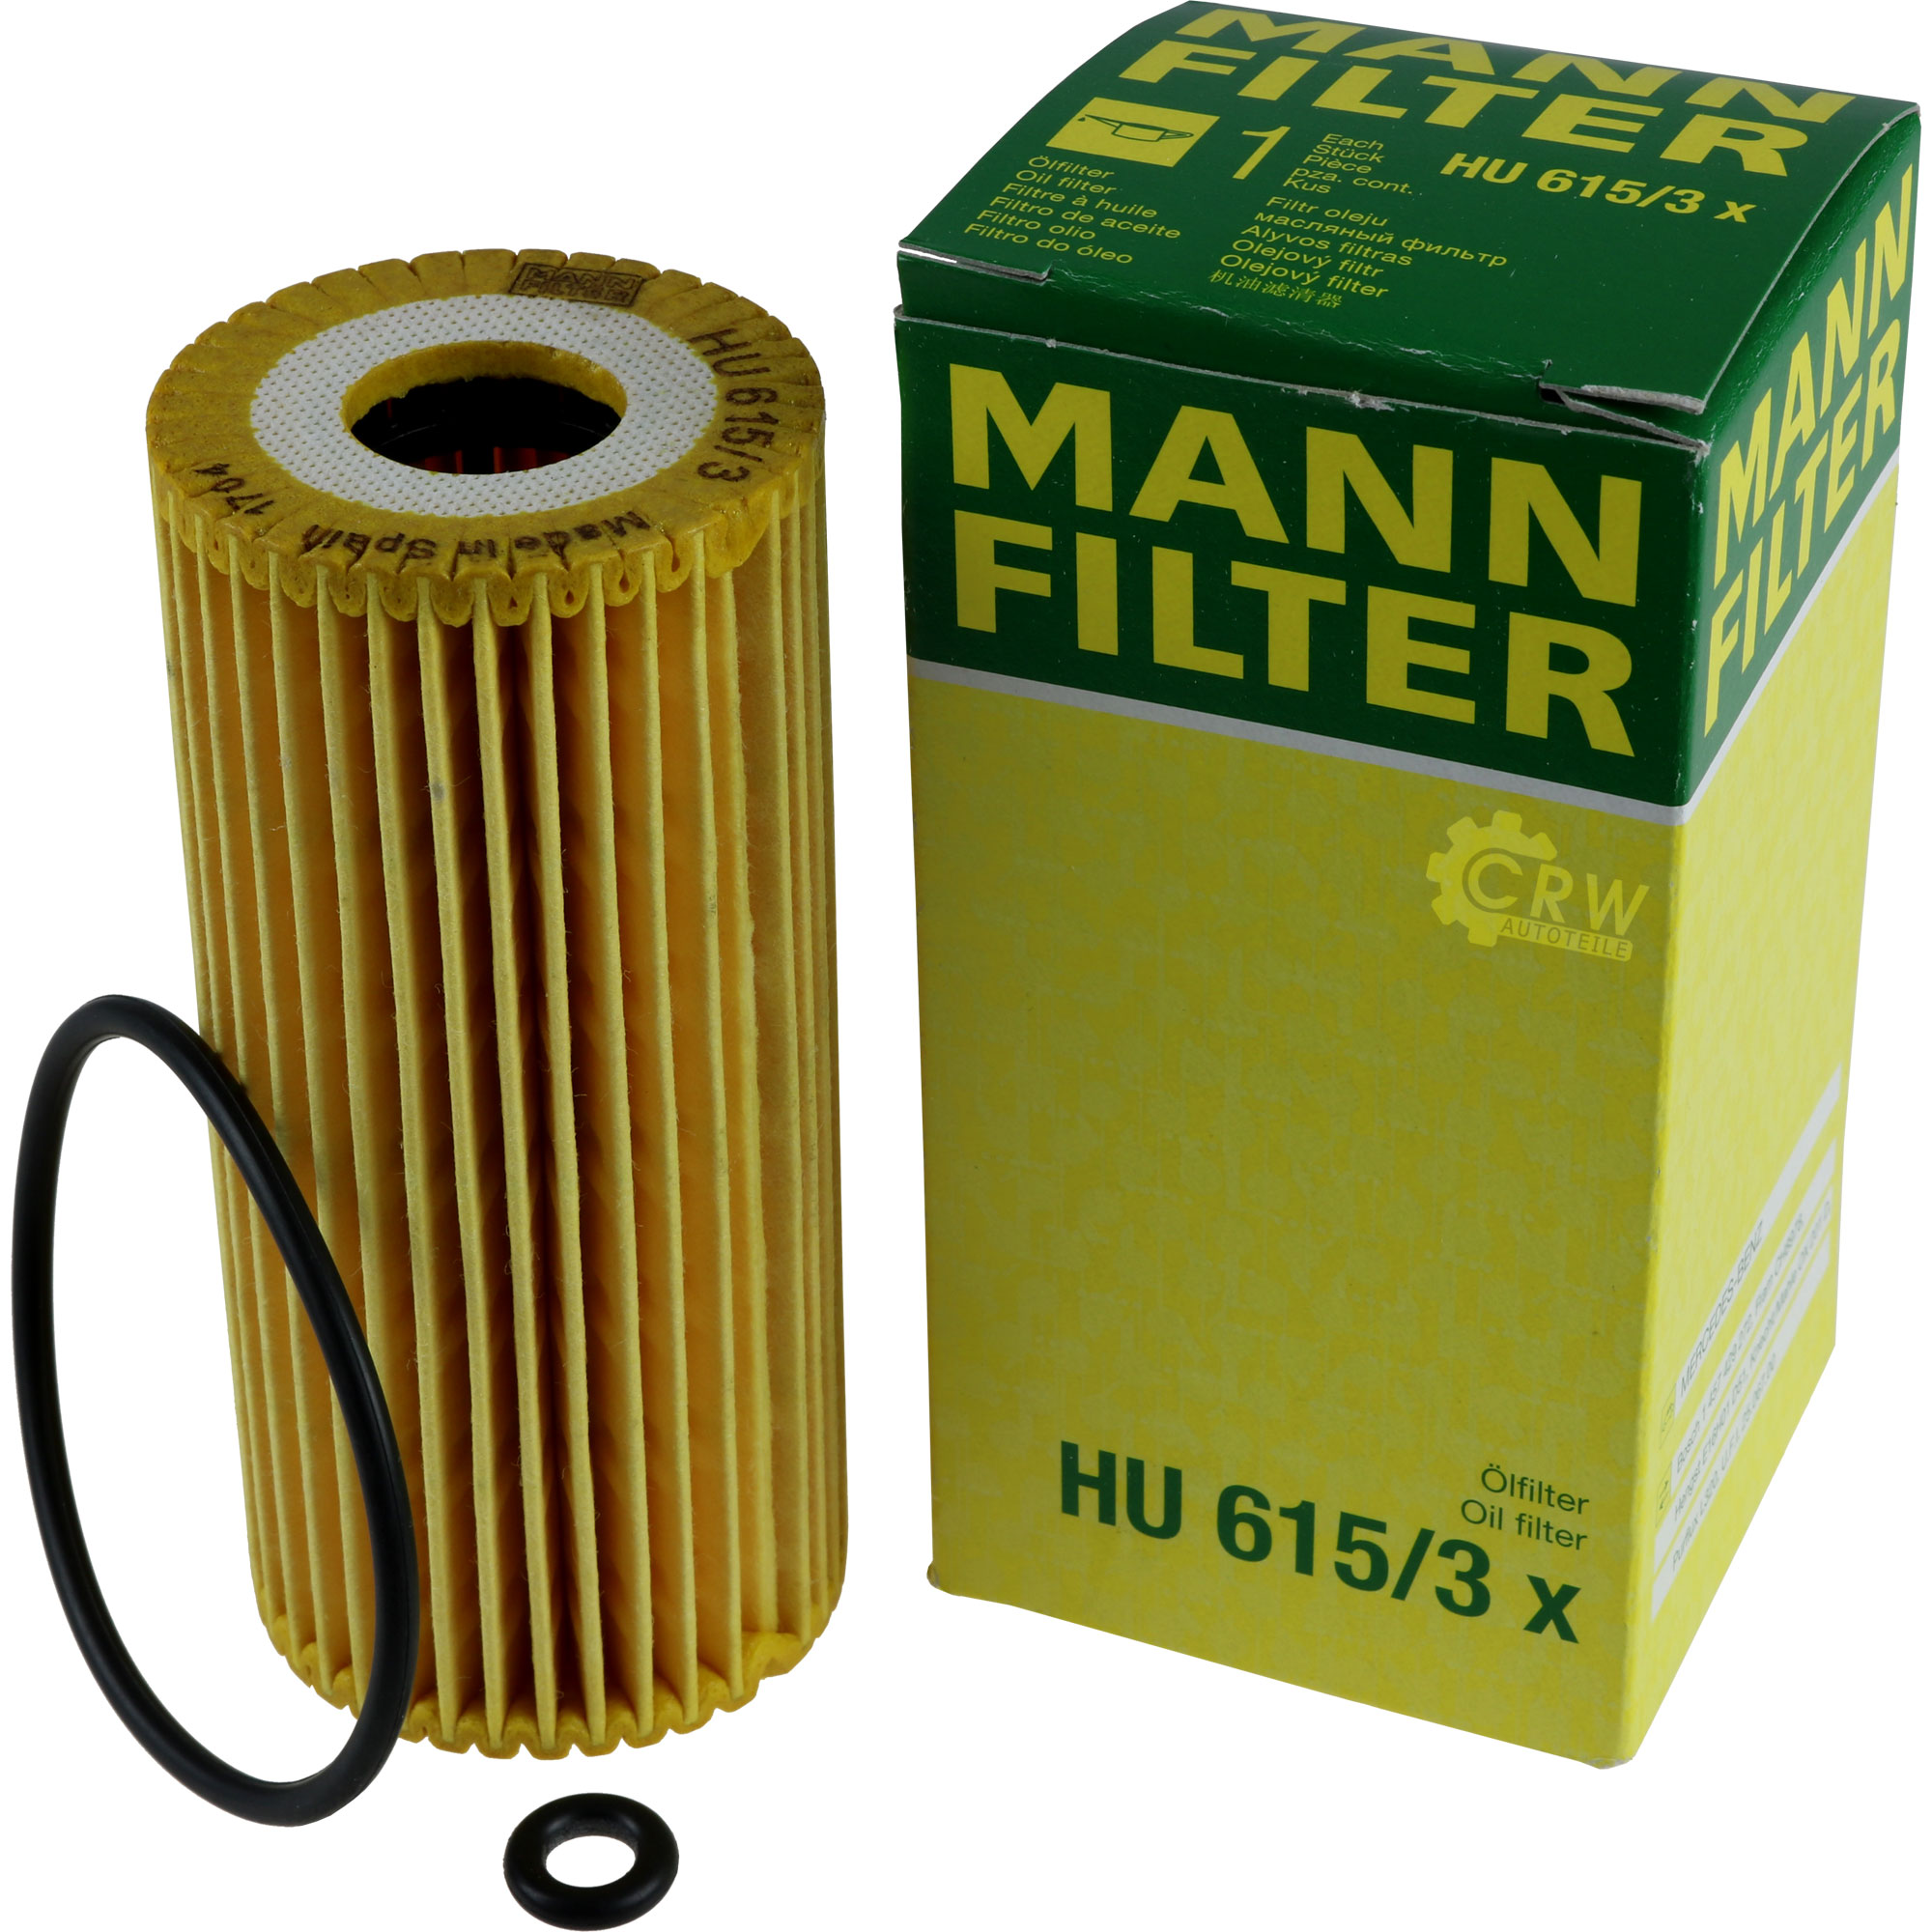 MANN-FILTER Ölfilter HU 615/3 x Oil Filter